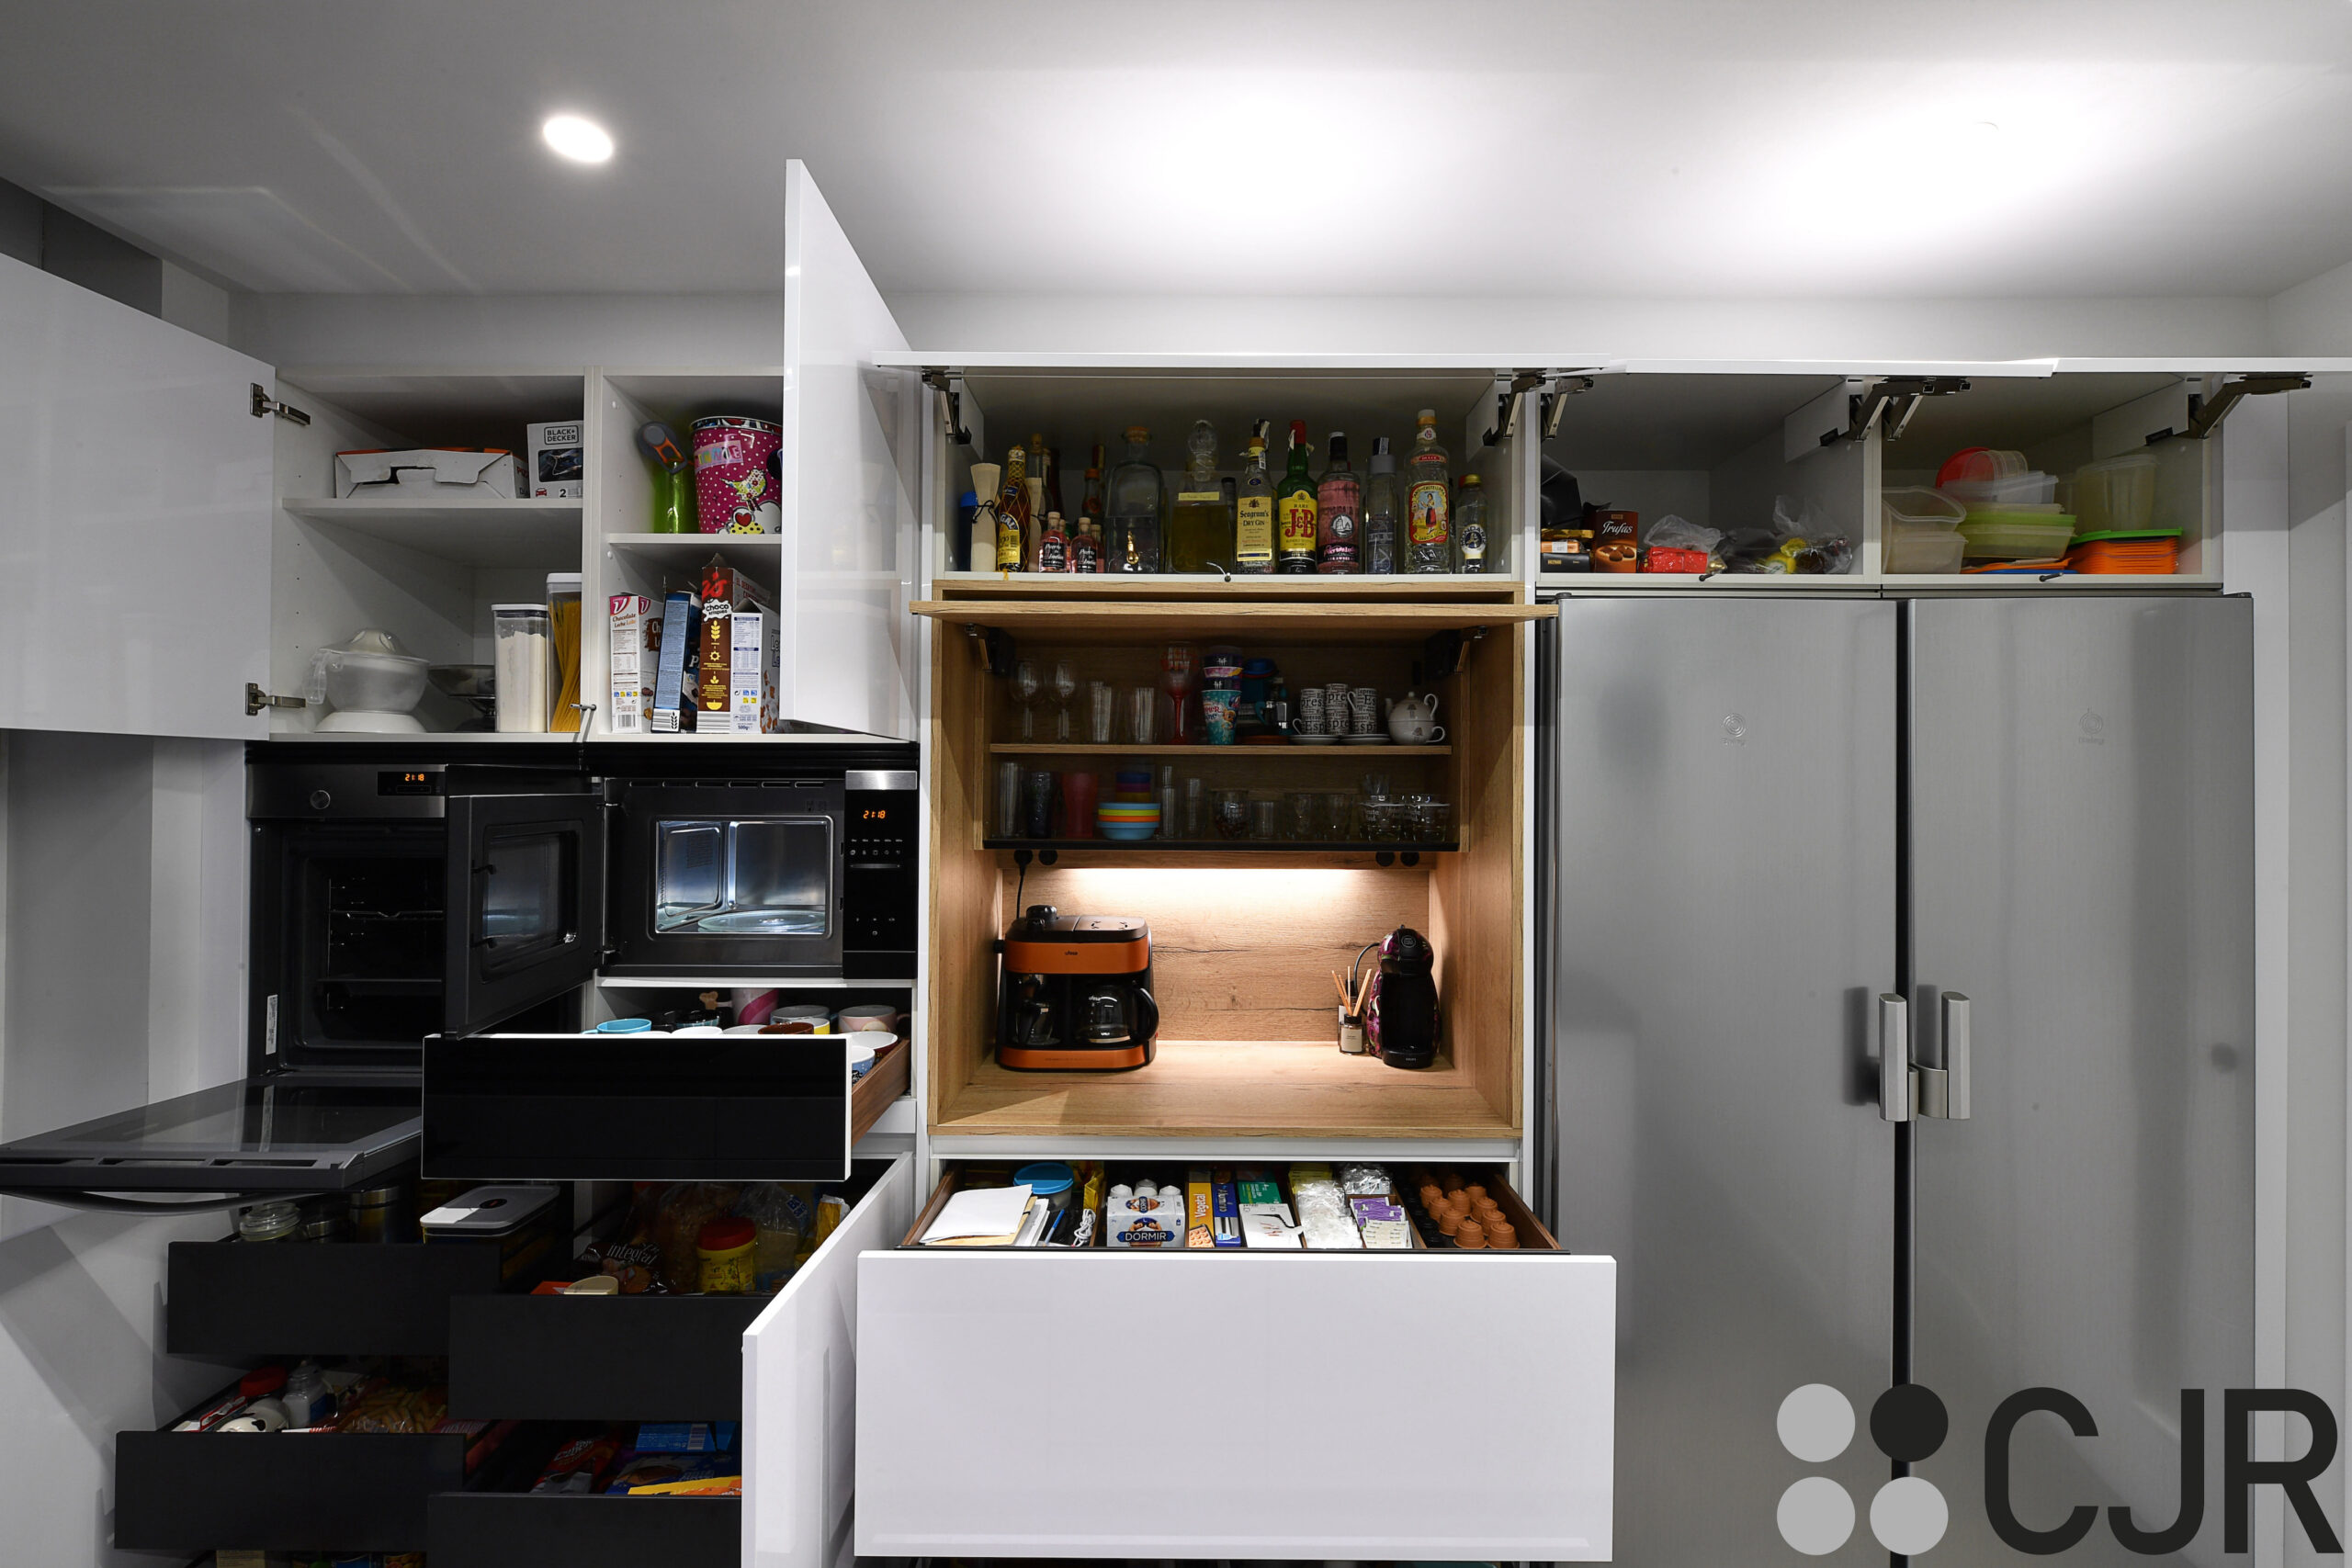 muebles altos de cocina profundos con maxima capacidad de almacenamiento cocinas cjr